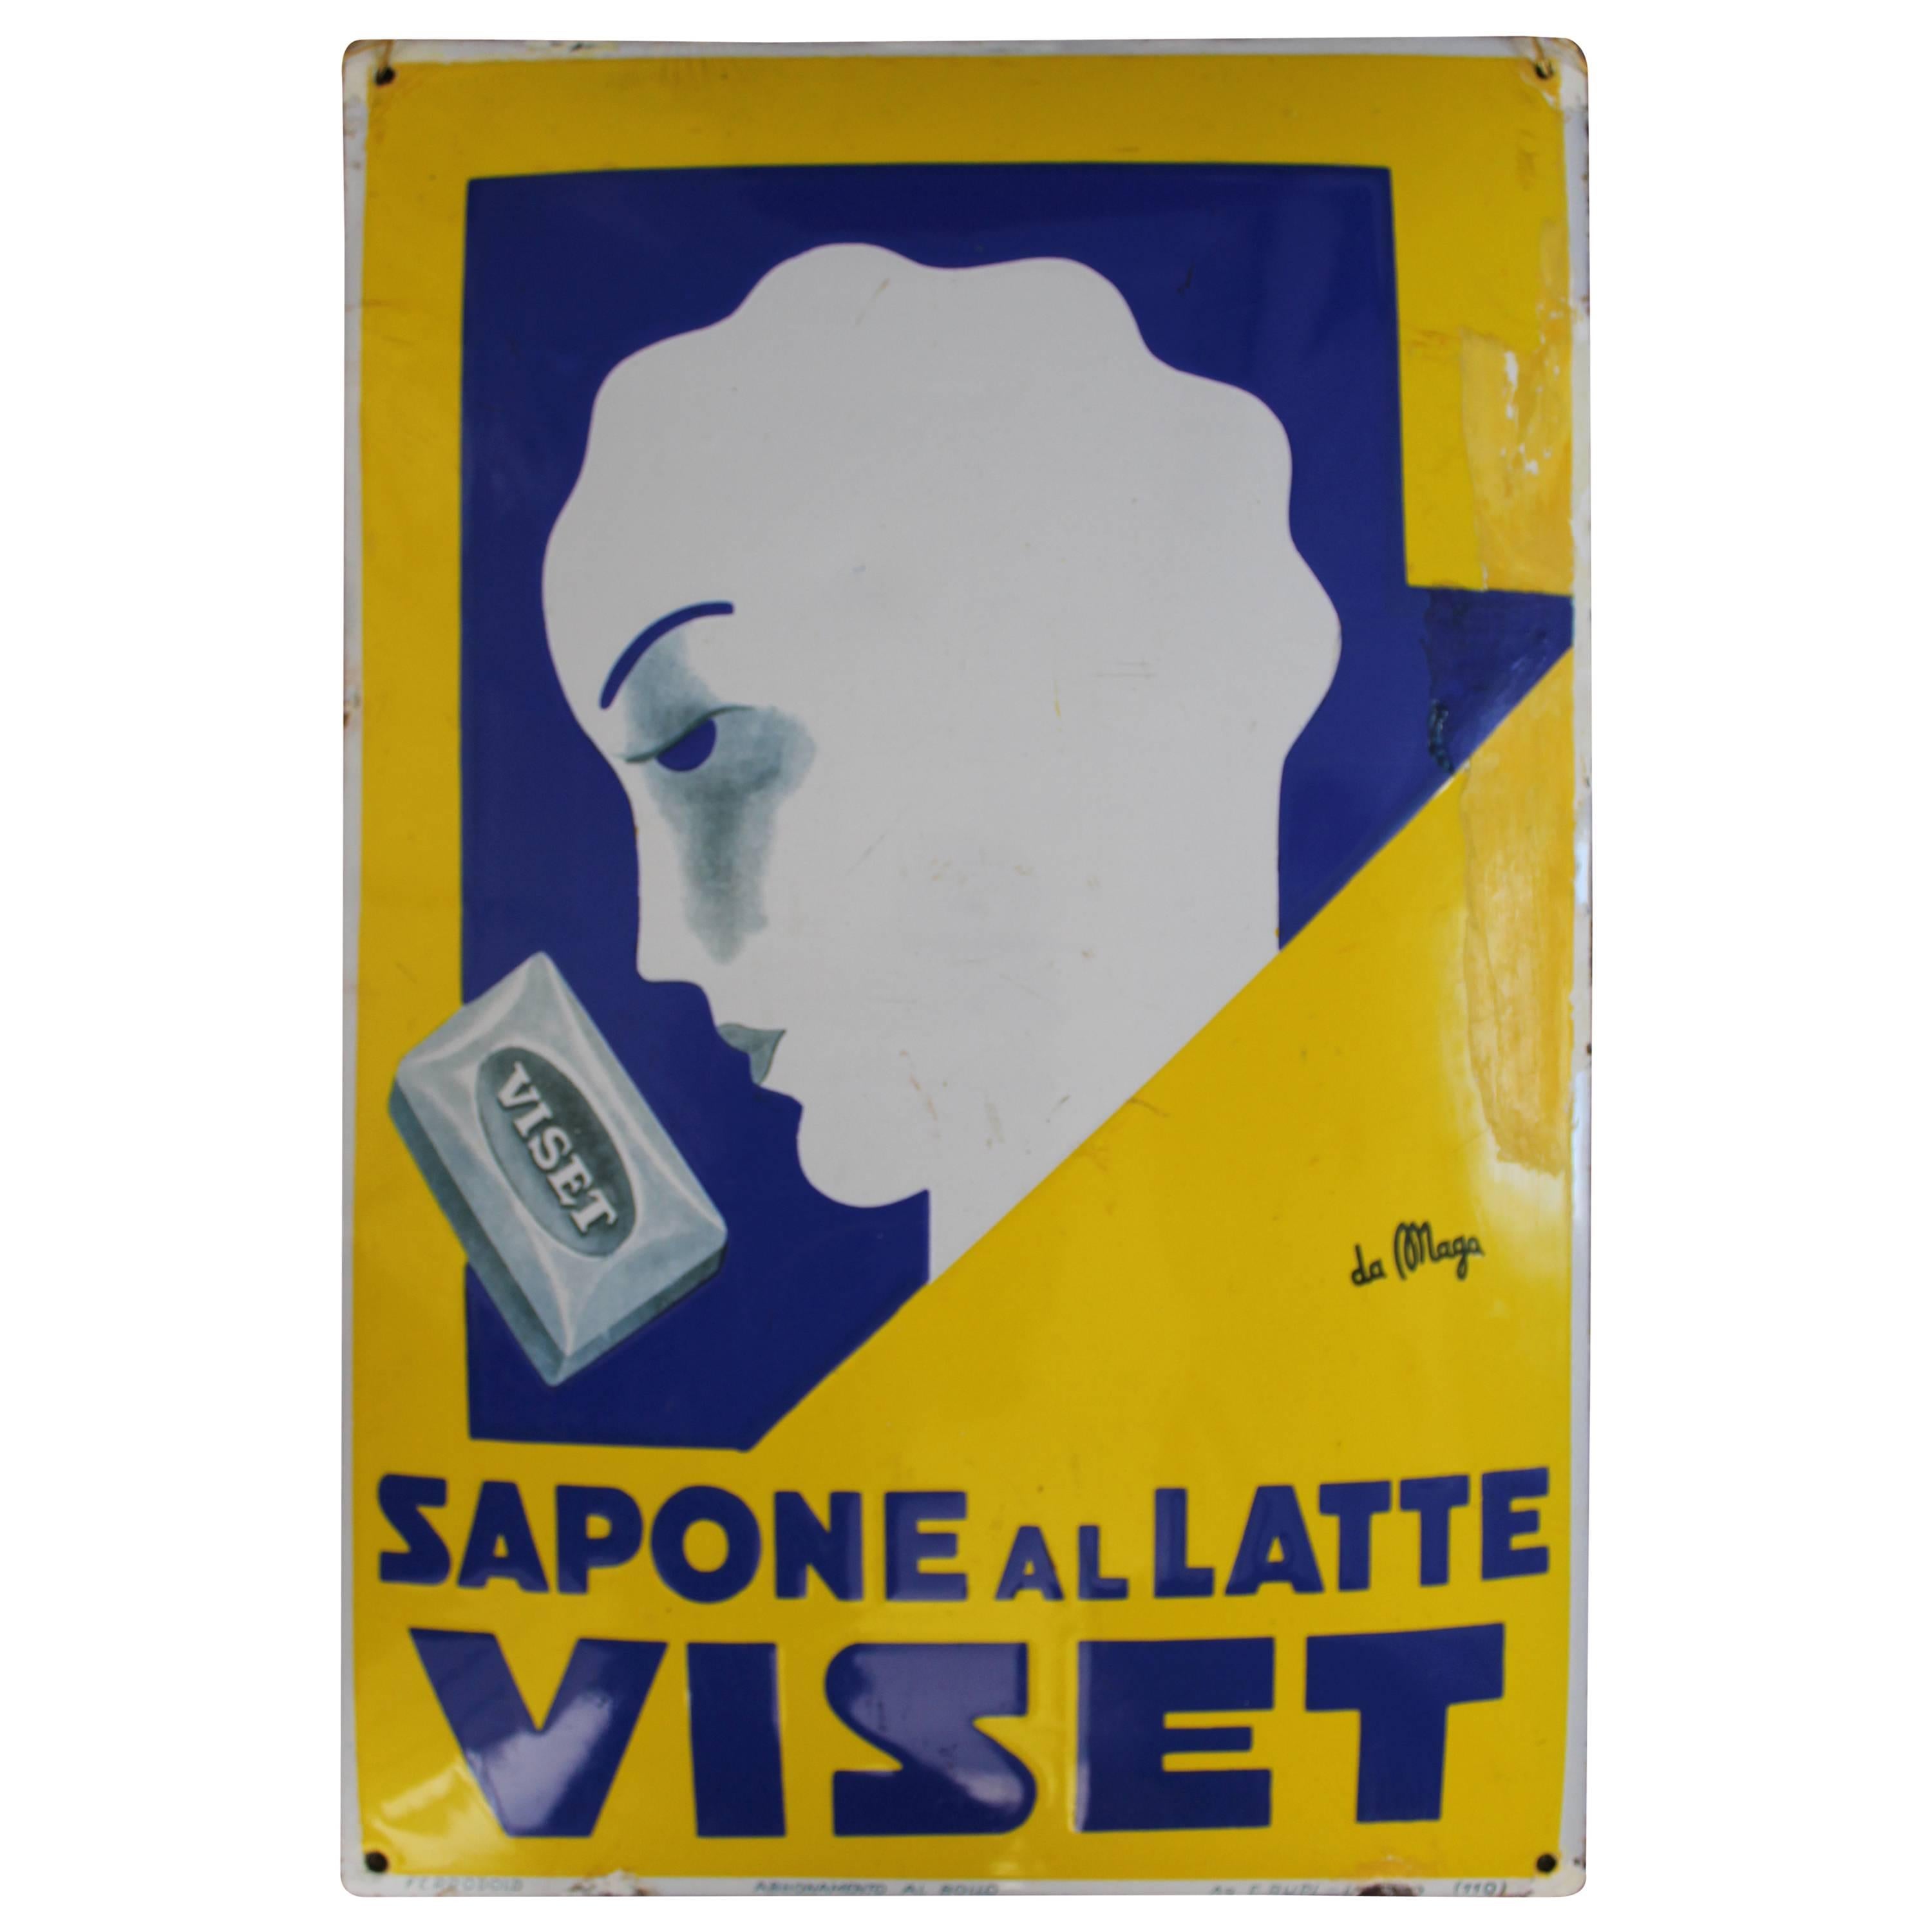 Giuseppe Magagnoli 'Maga' Art Deco Porcelain Sign, Poster, for Viset